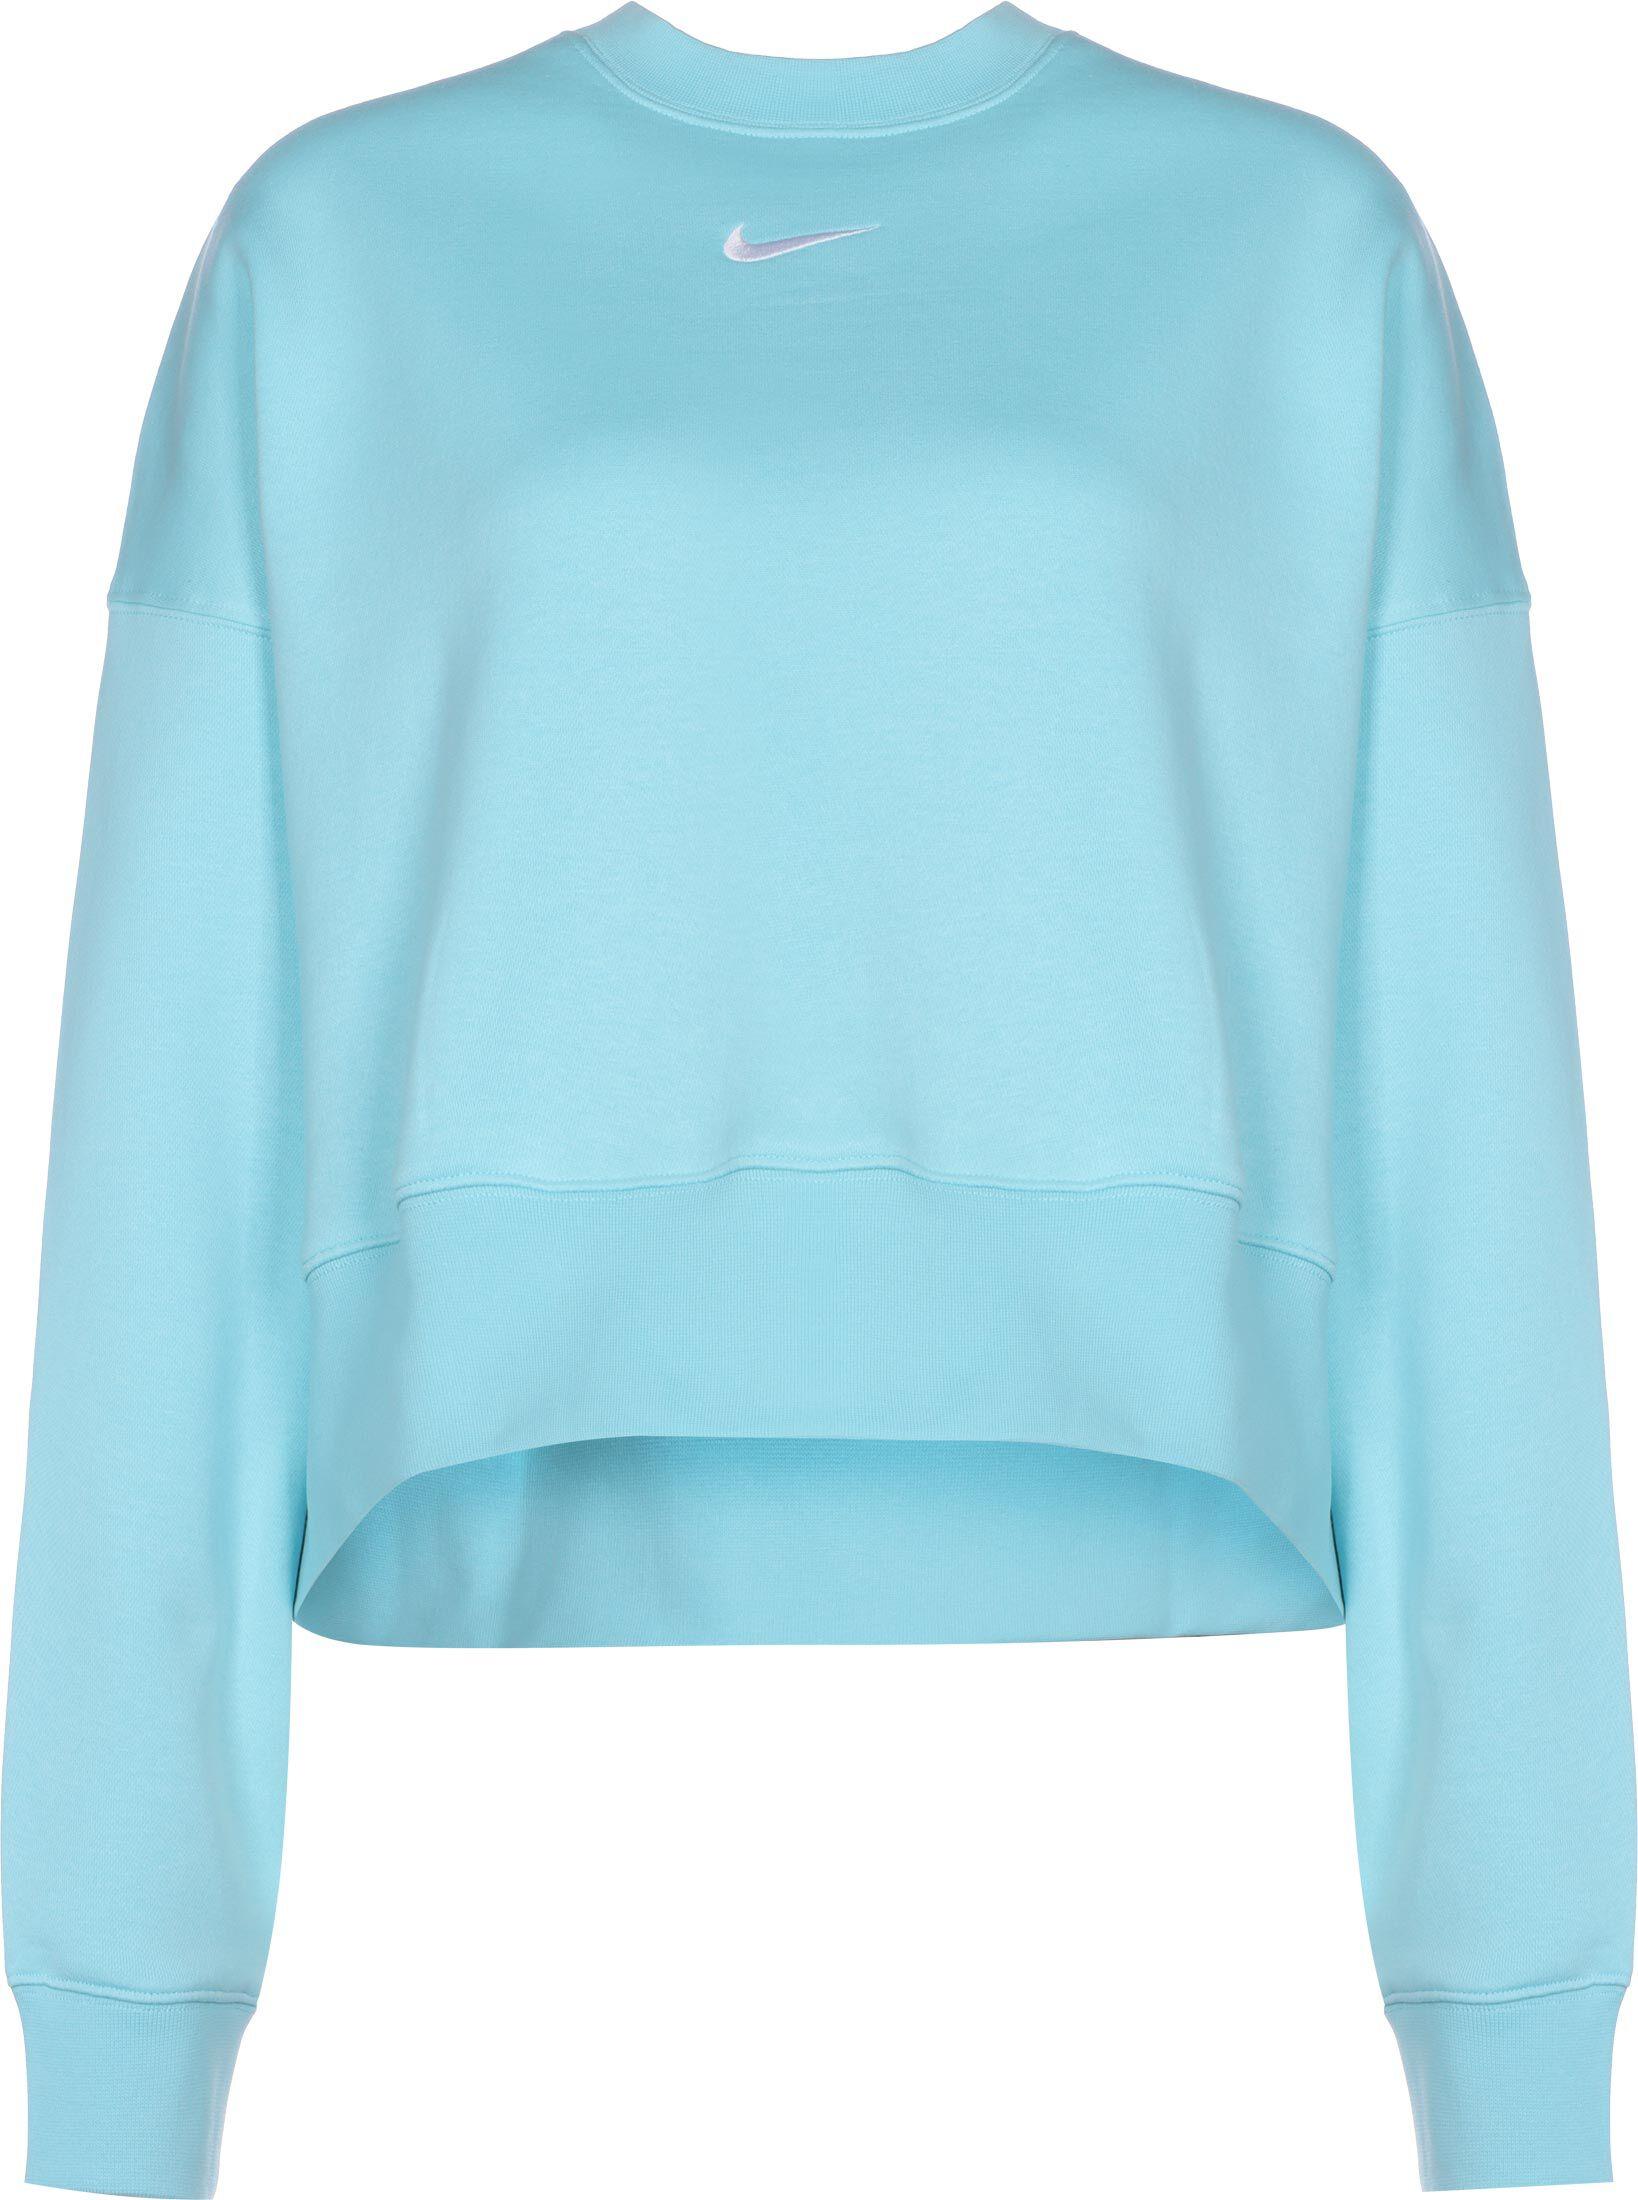 Nike Sportswear Essential Sweatshirt Damen blau im Online Shop von SportScheck